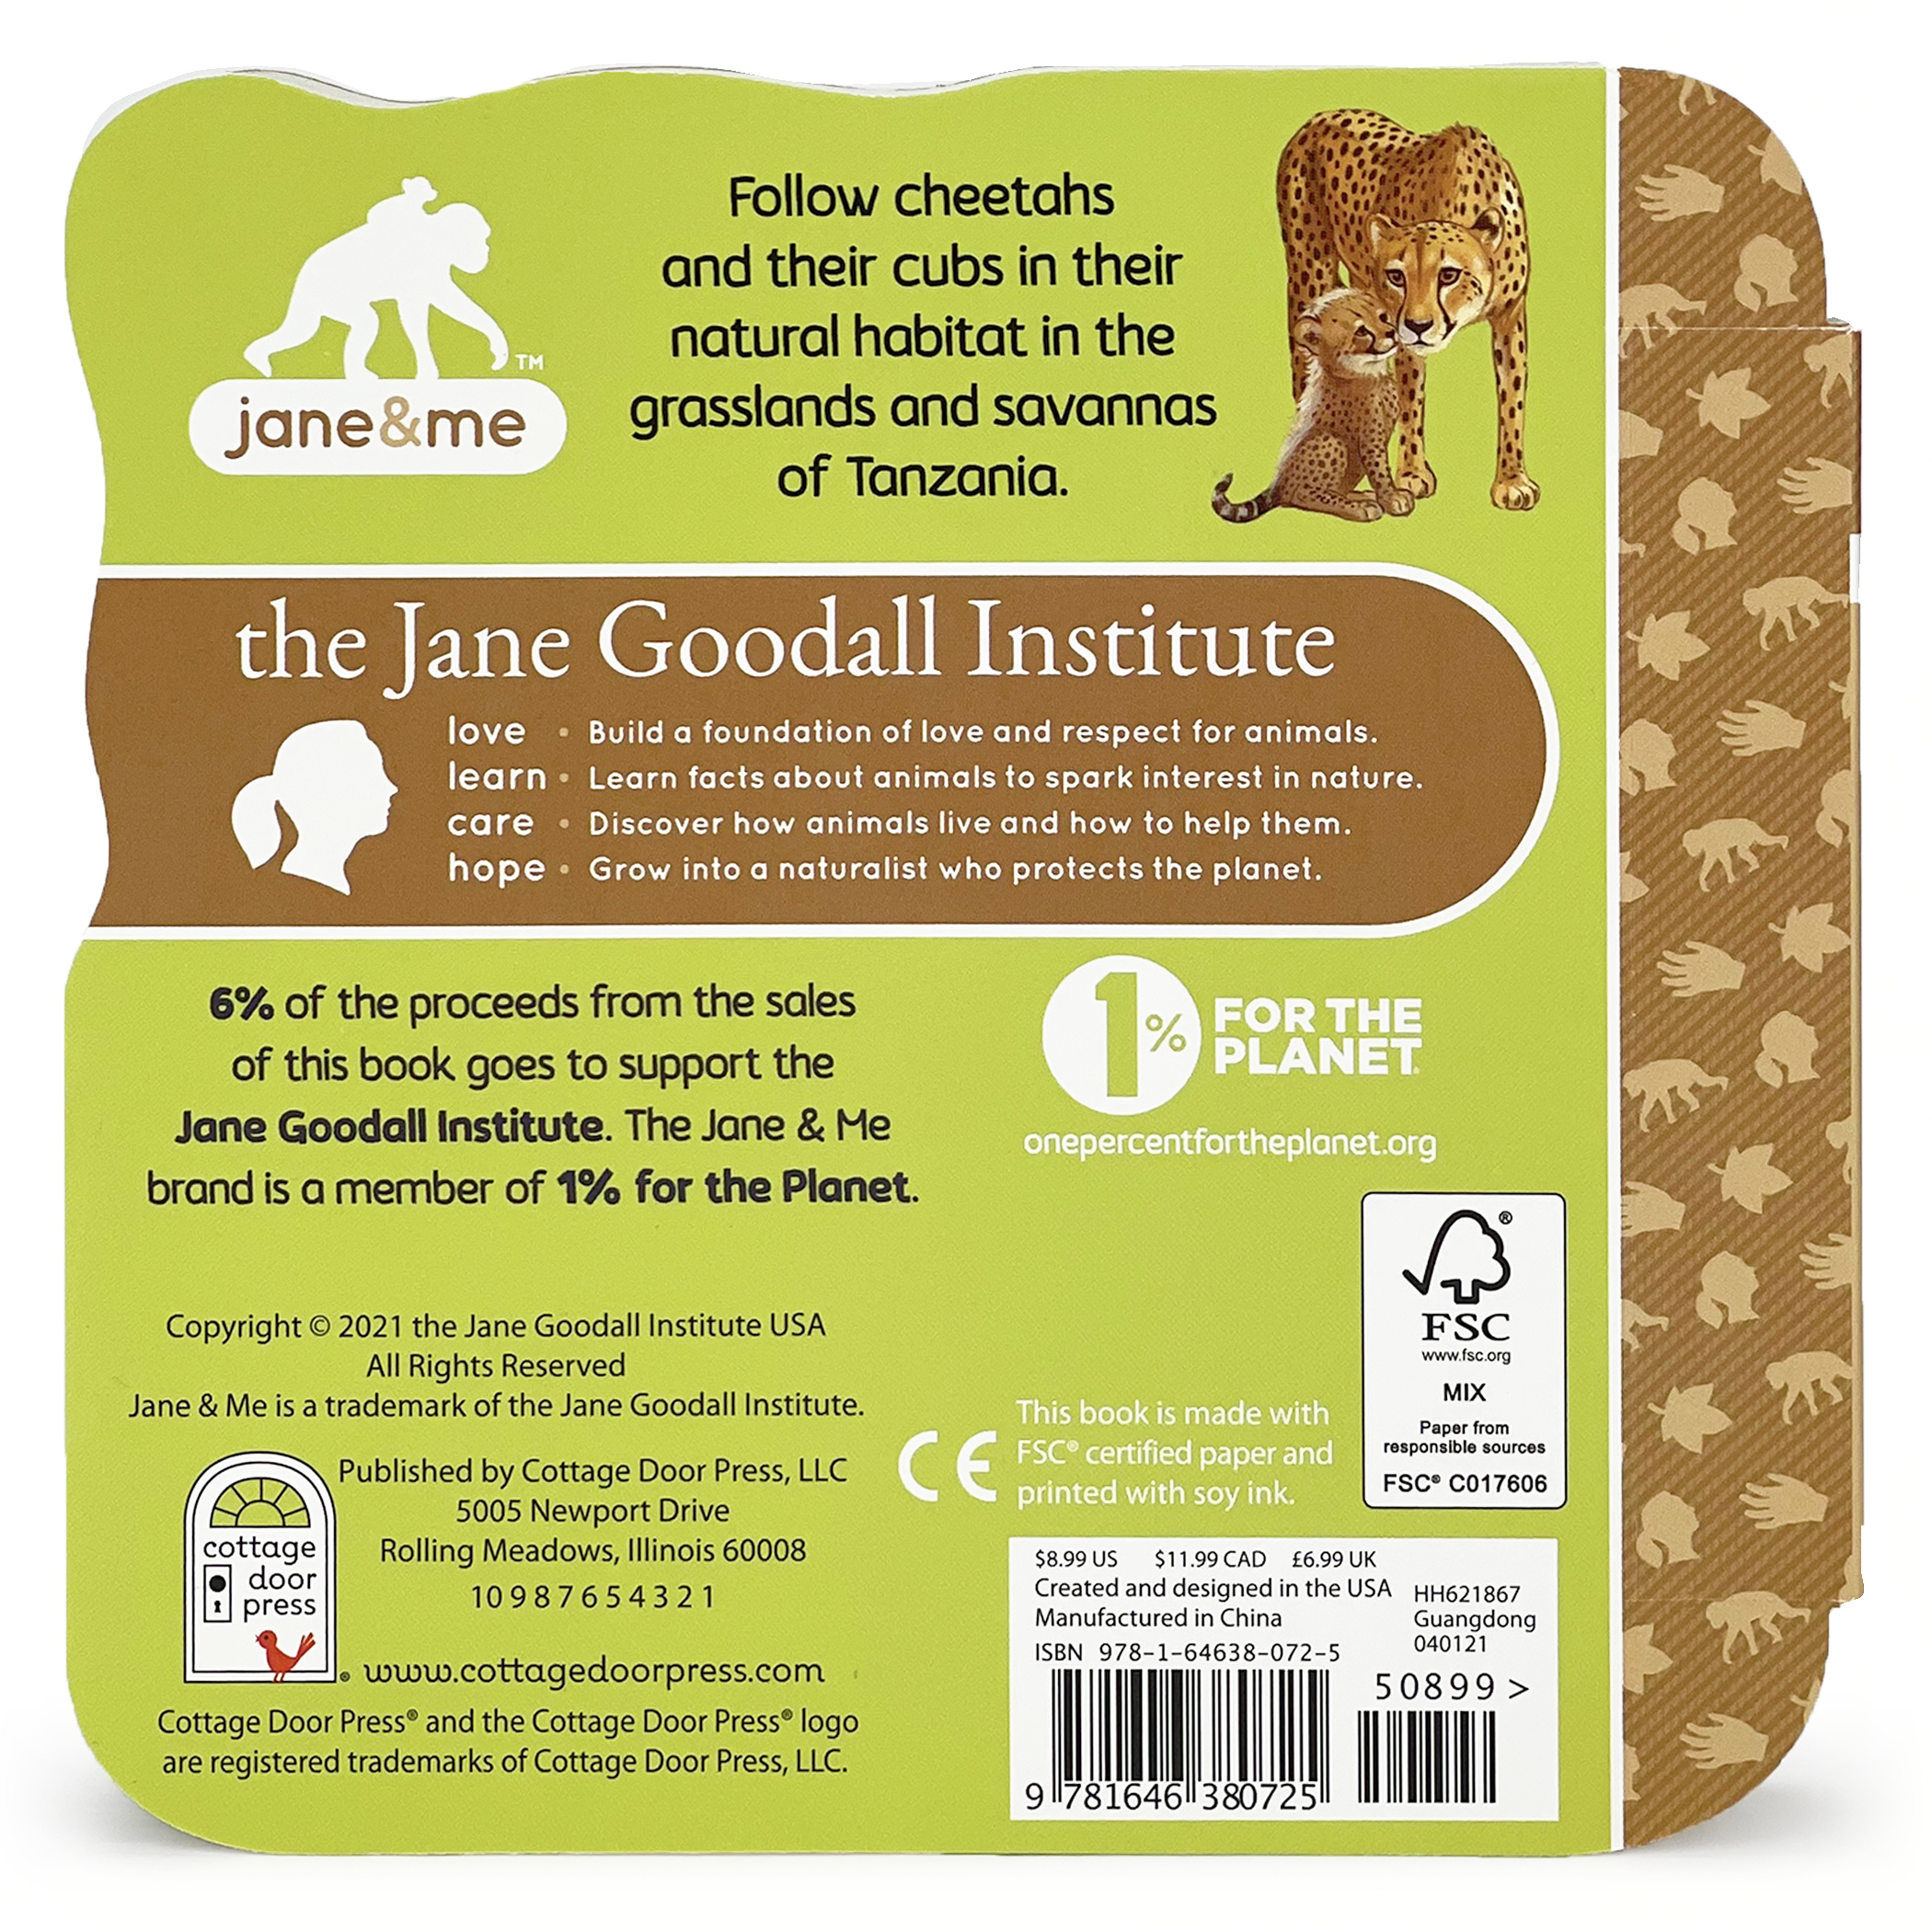 Jane & Me Cheetahs (The Jane Goodall Institute)